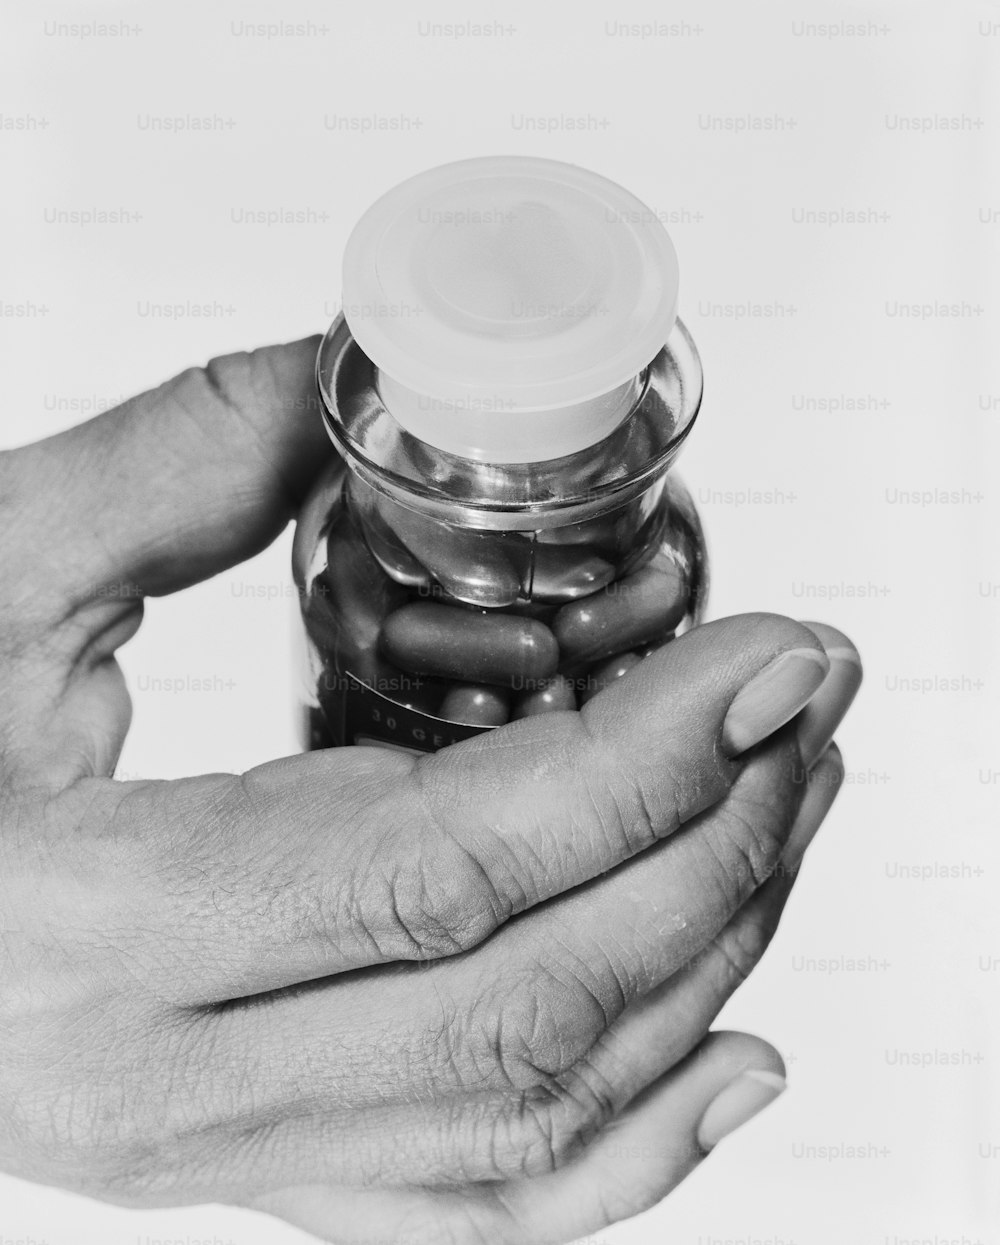 Una foto en blanco y negro de dos manos sosteniendo un frasco de píldoras